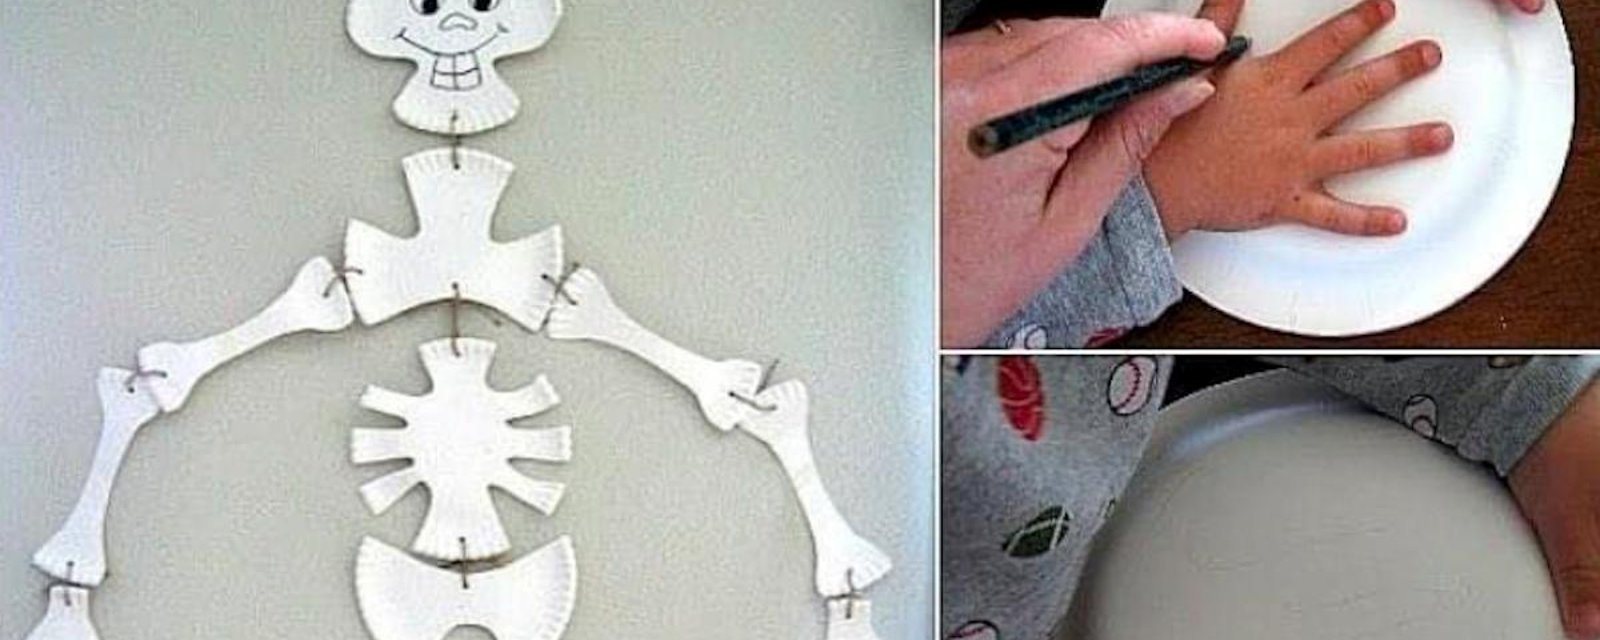 Comment faire un beau squelette avec des assiettes en papier